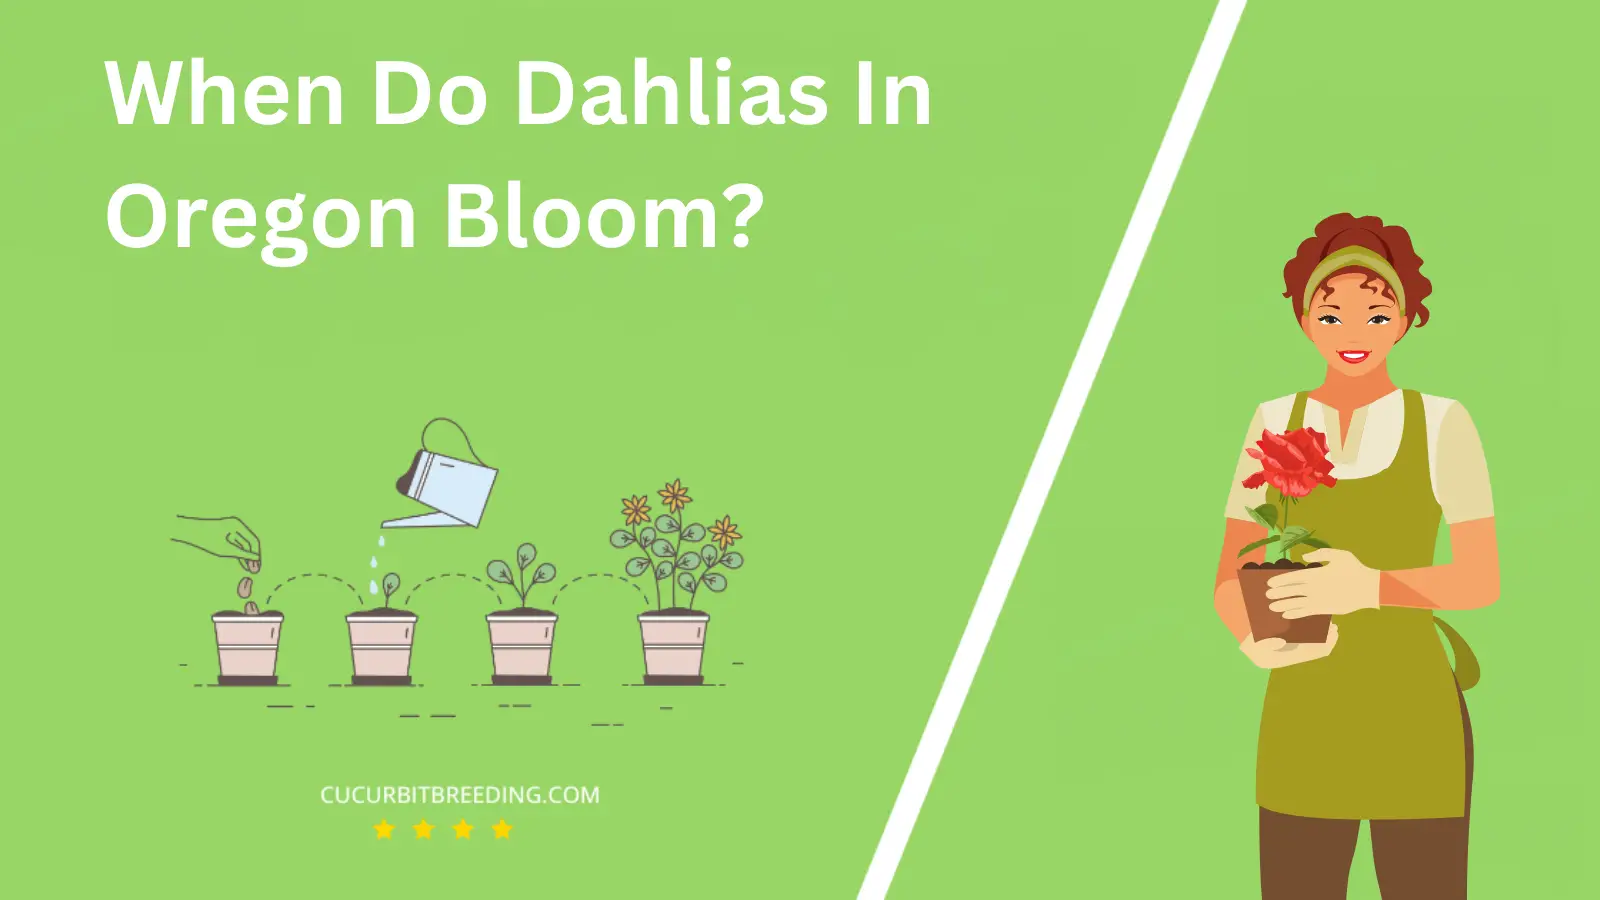 When Do Dahlias In Oregon Bloom?